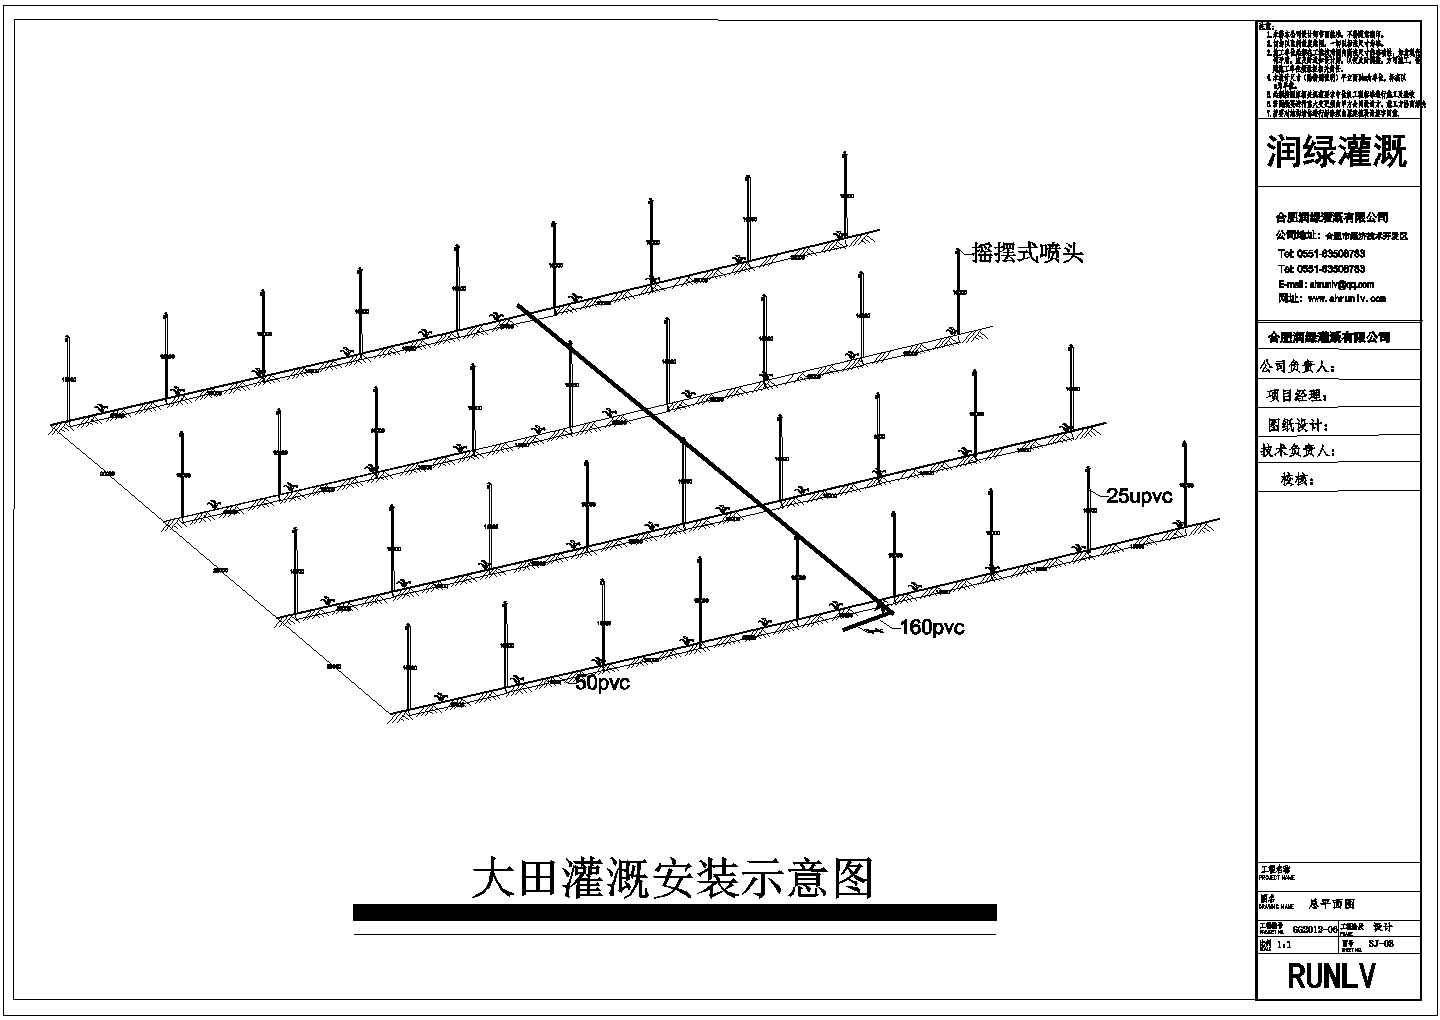 全椒县古河镇节水灌溉施工图纸（商家图纸）